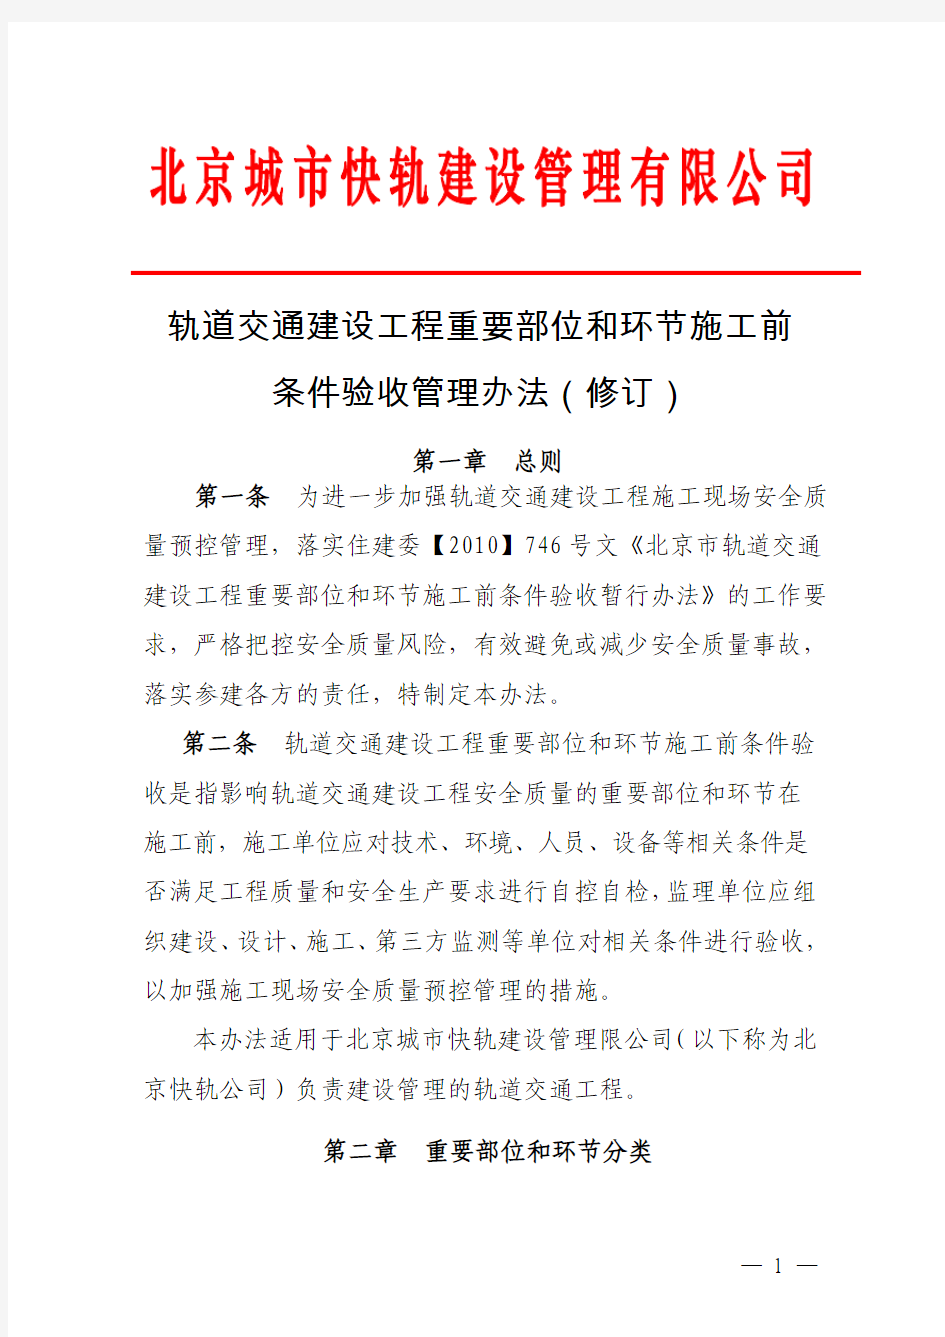 北京快轨关键部位和重要环节验收办法(2015年131号文最新板)